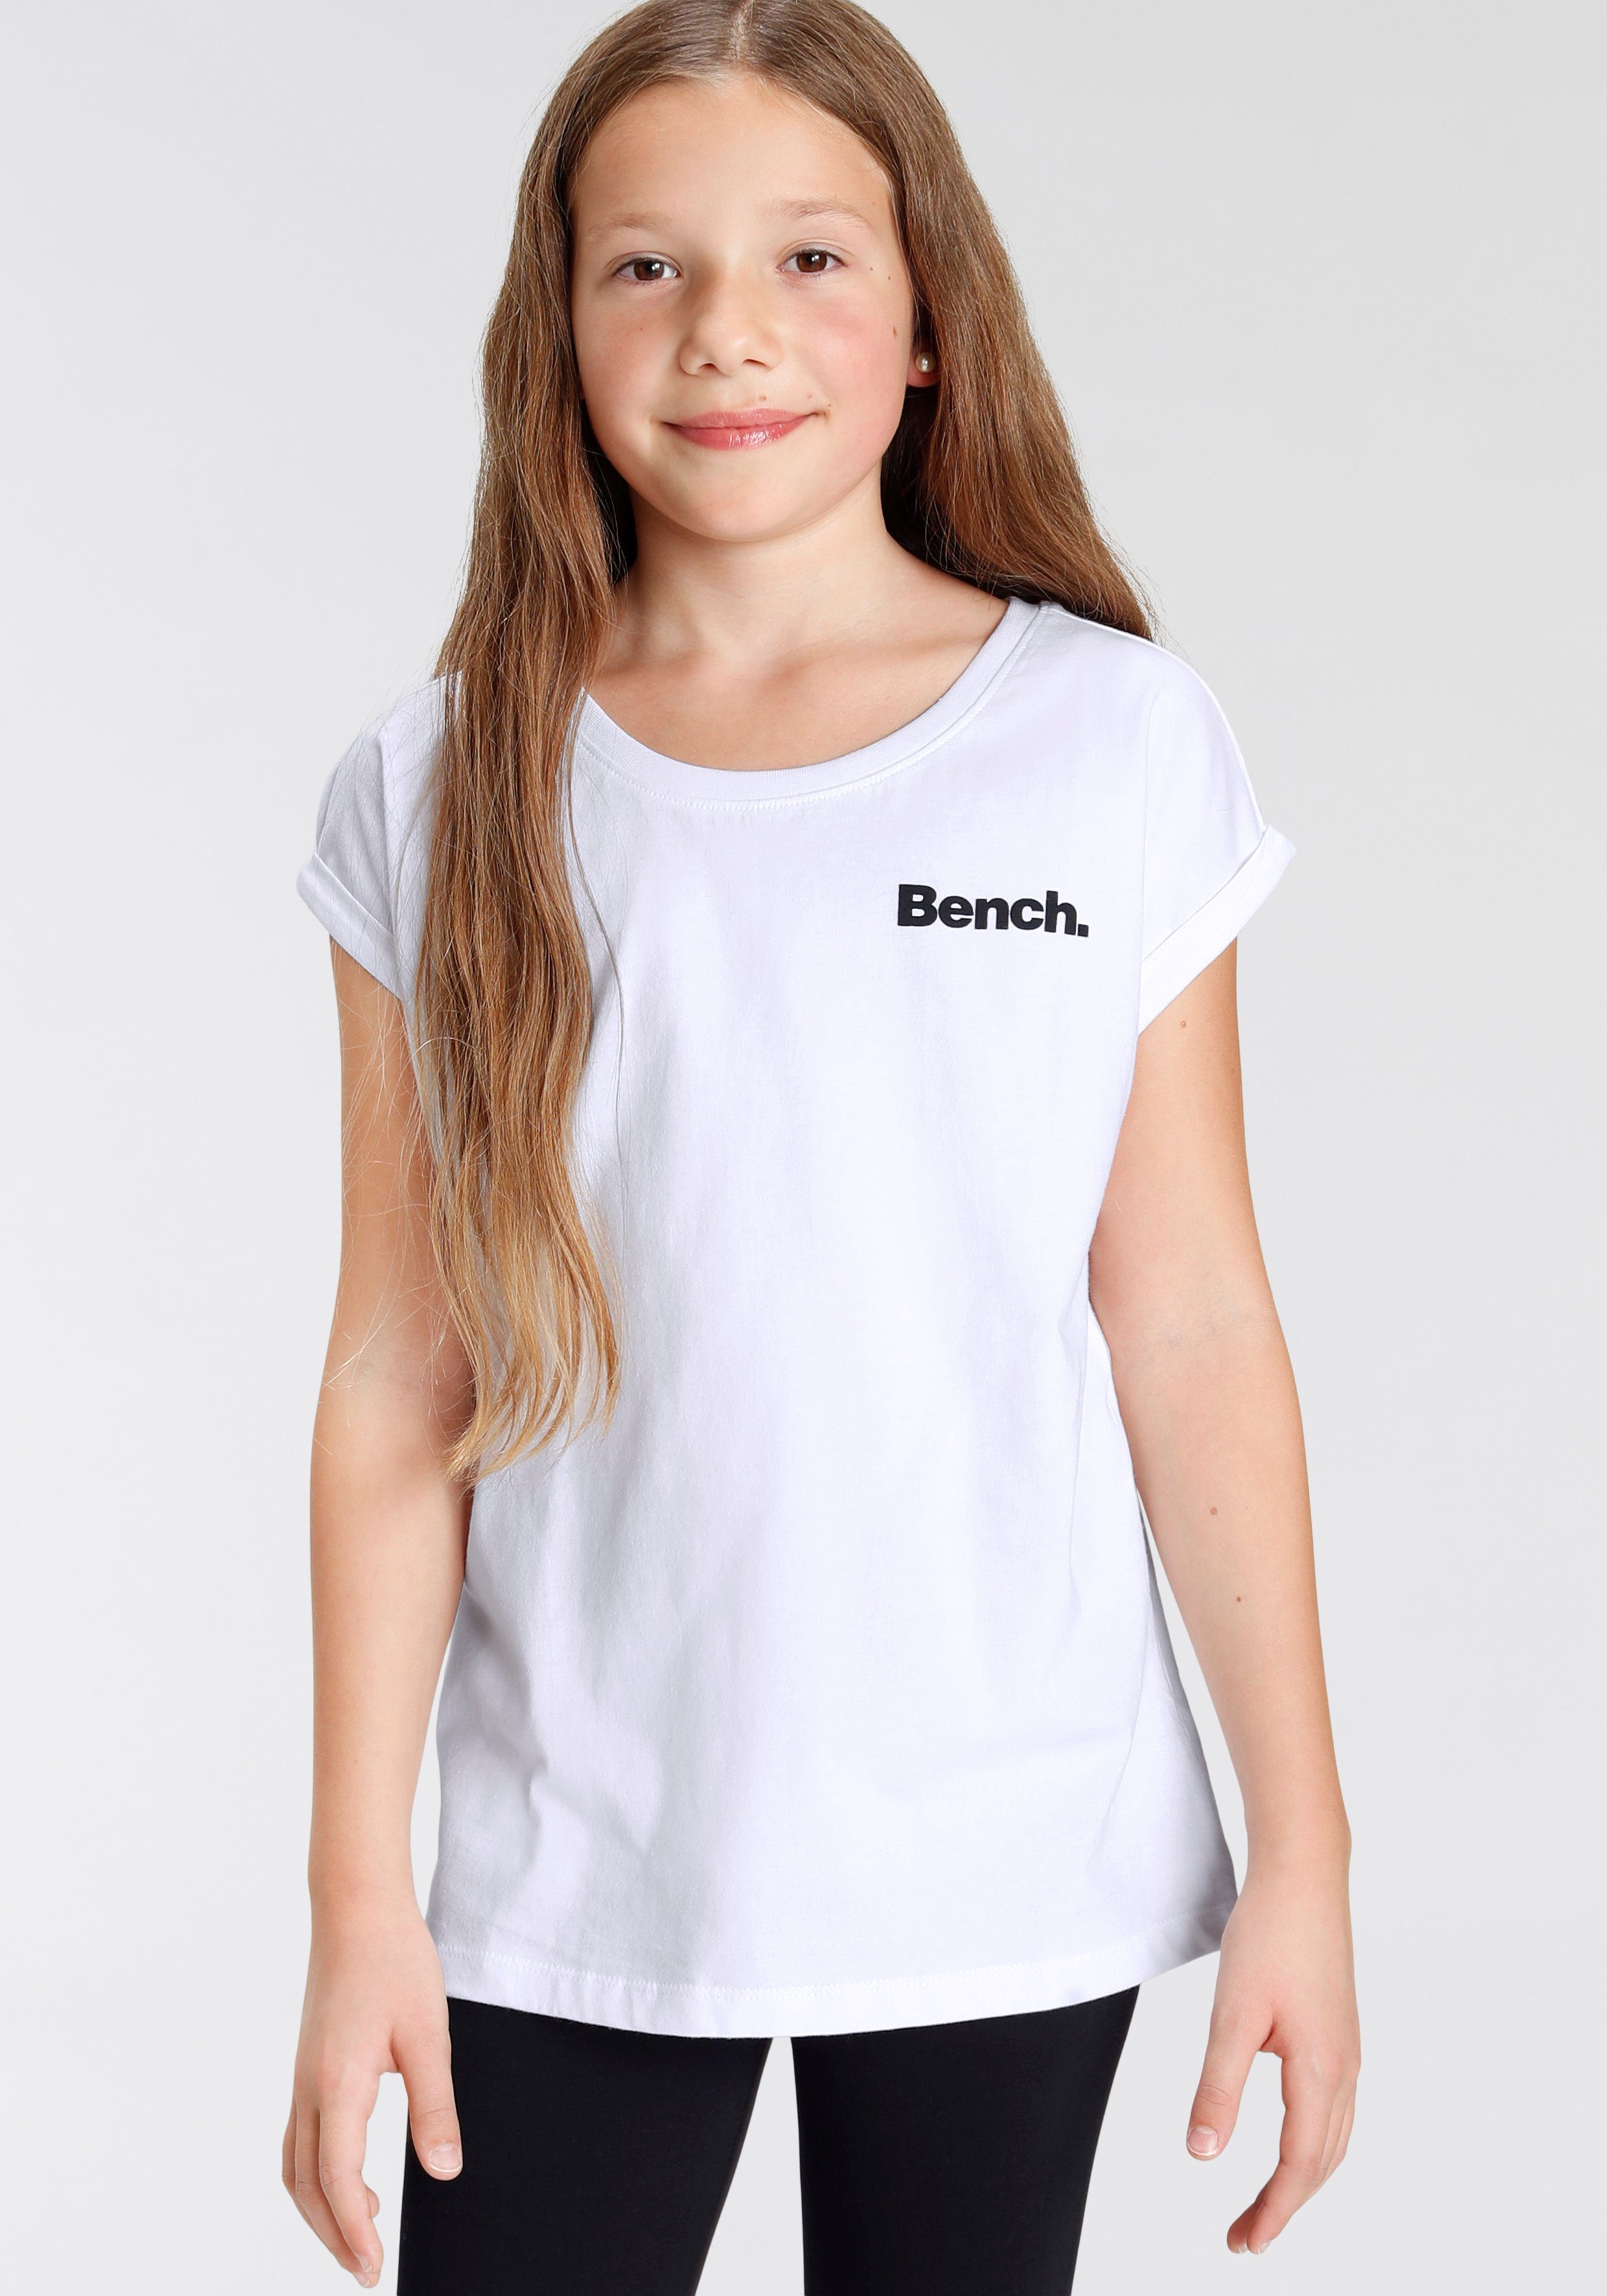 Bench. Fotodruck mit T-Shirt